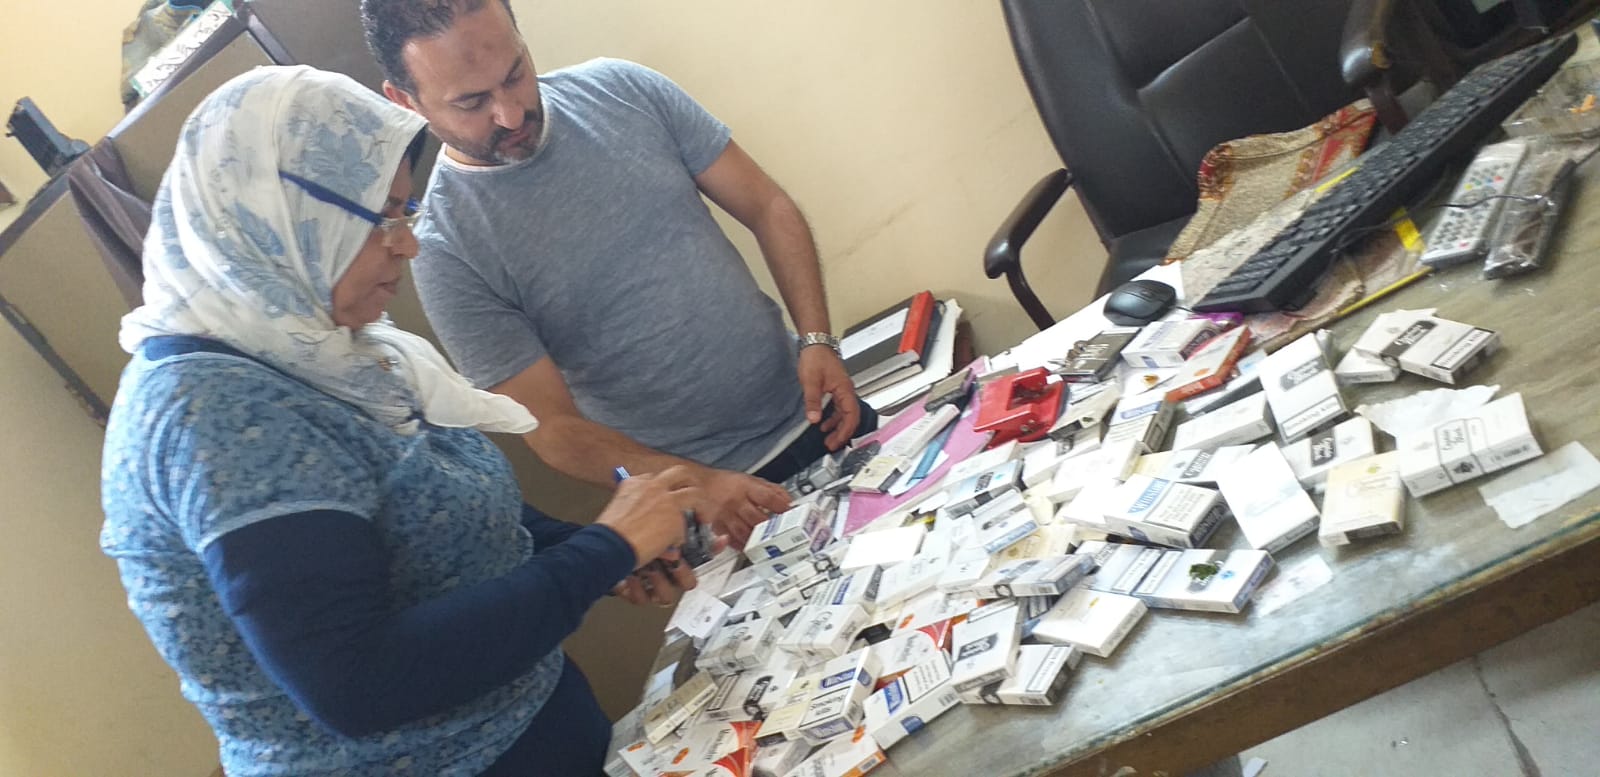 ضبط مايزيد عن 2000 سيجارة مجهولة المصدر بشرق الاسكندرية